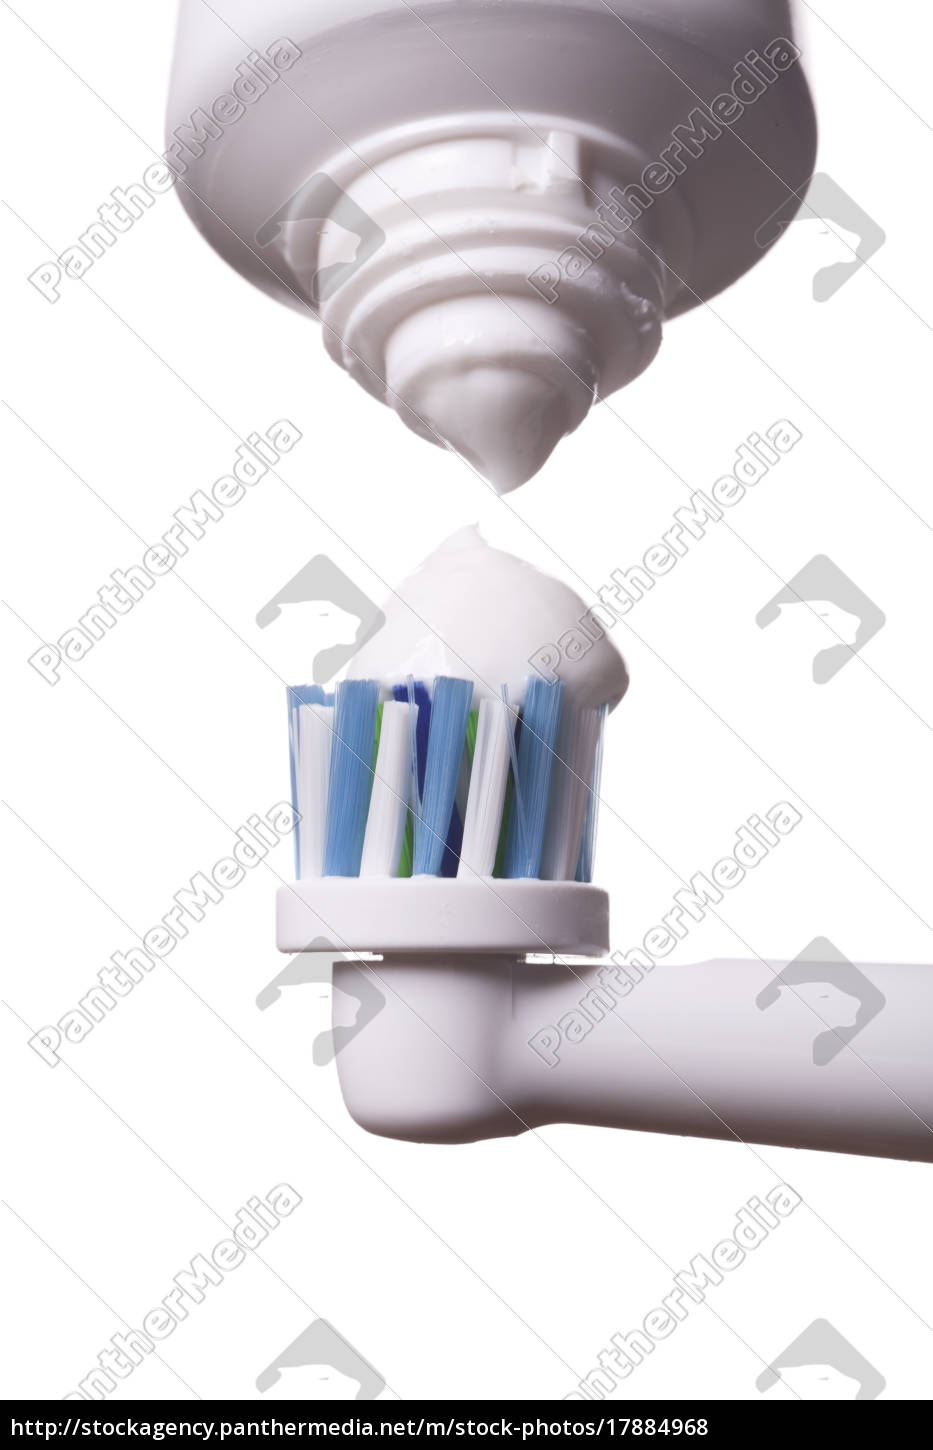 Elektrisk med tandpasta isoleret på hvidt - Stockphoto #17884968 | PantherMedia